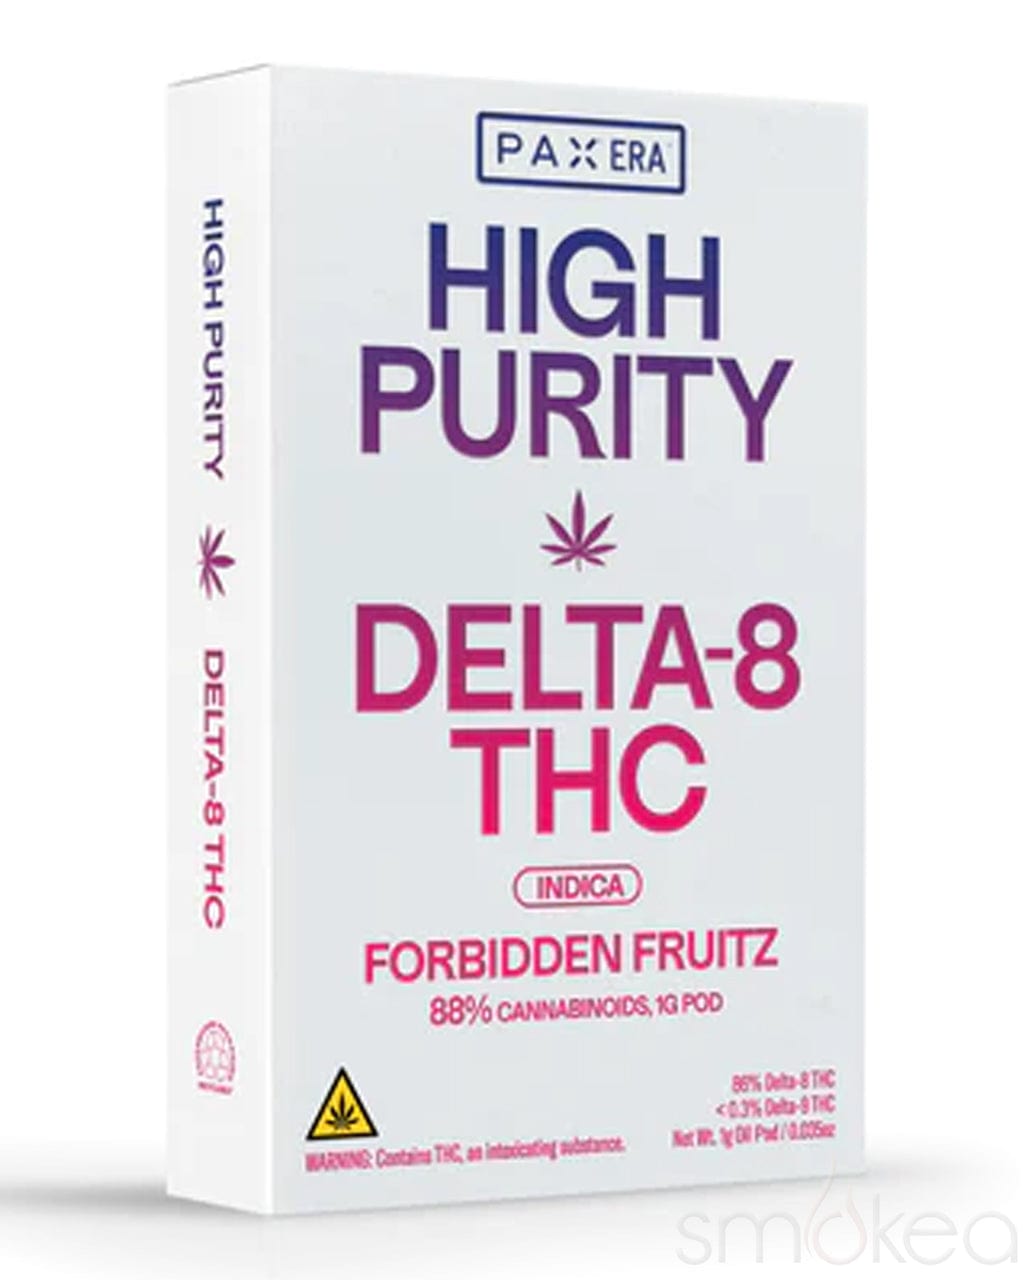 Pax 1g High Purity Delta 8 Vape Pod - Forbidden Fruitz